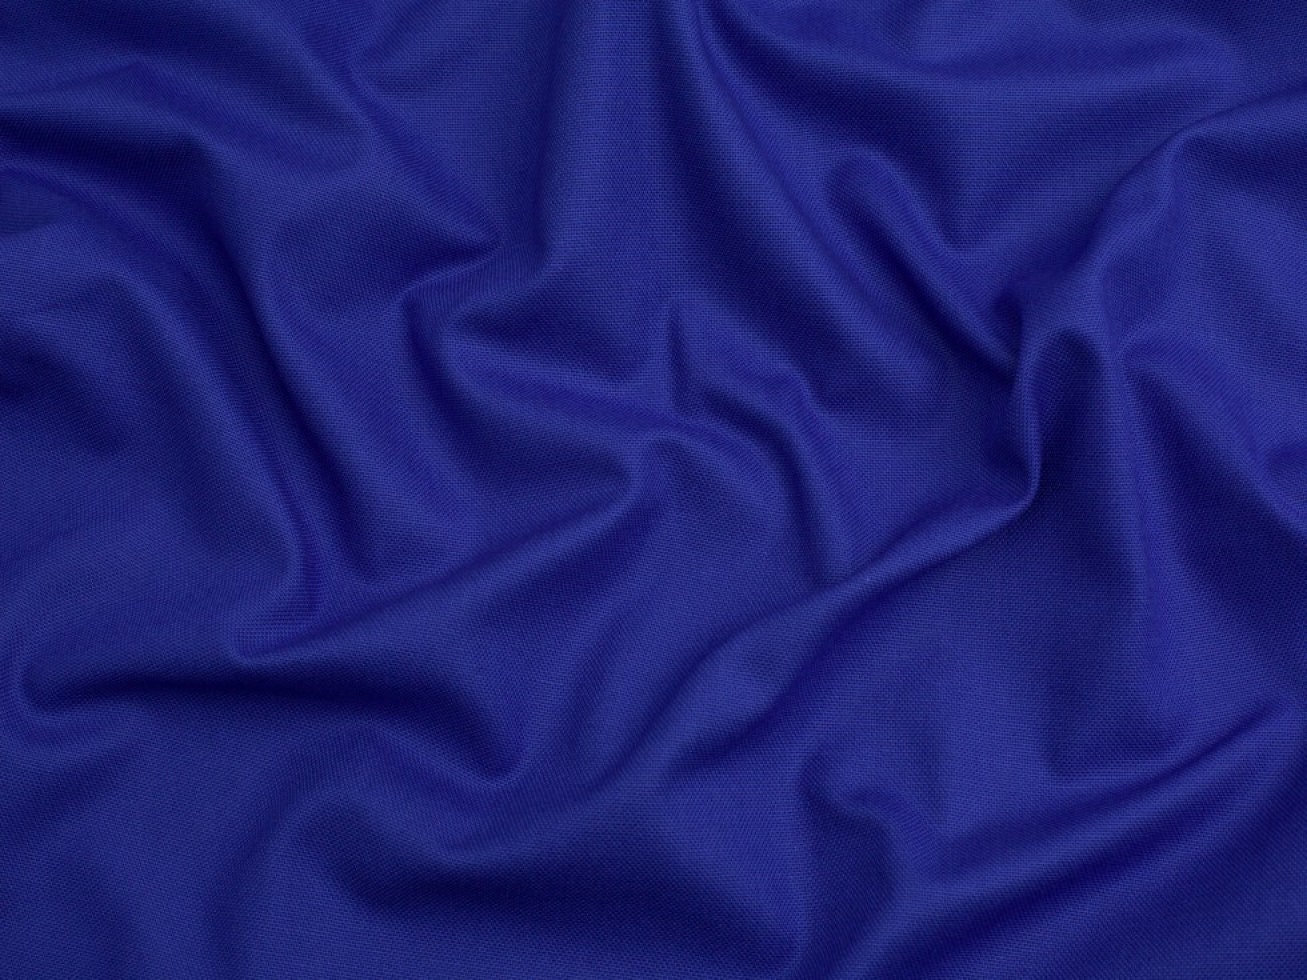 Minerva Core Range Soft Cotton Duck Canvas Fabric, 1193855